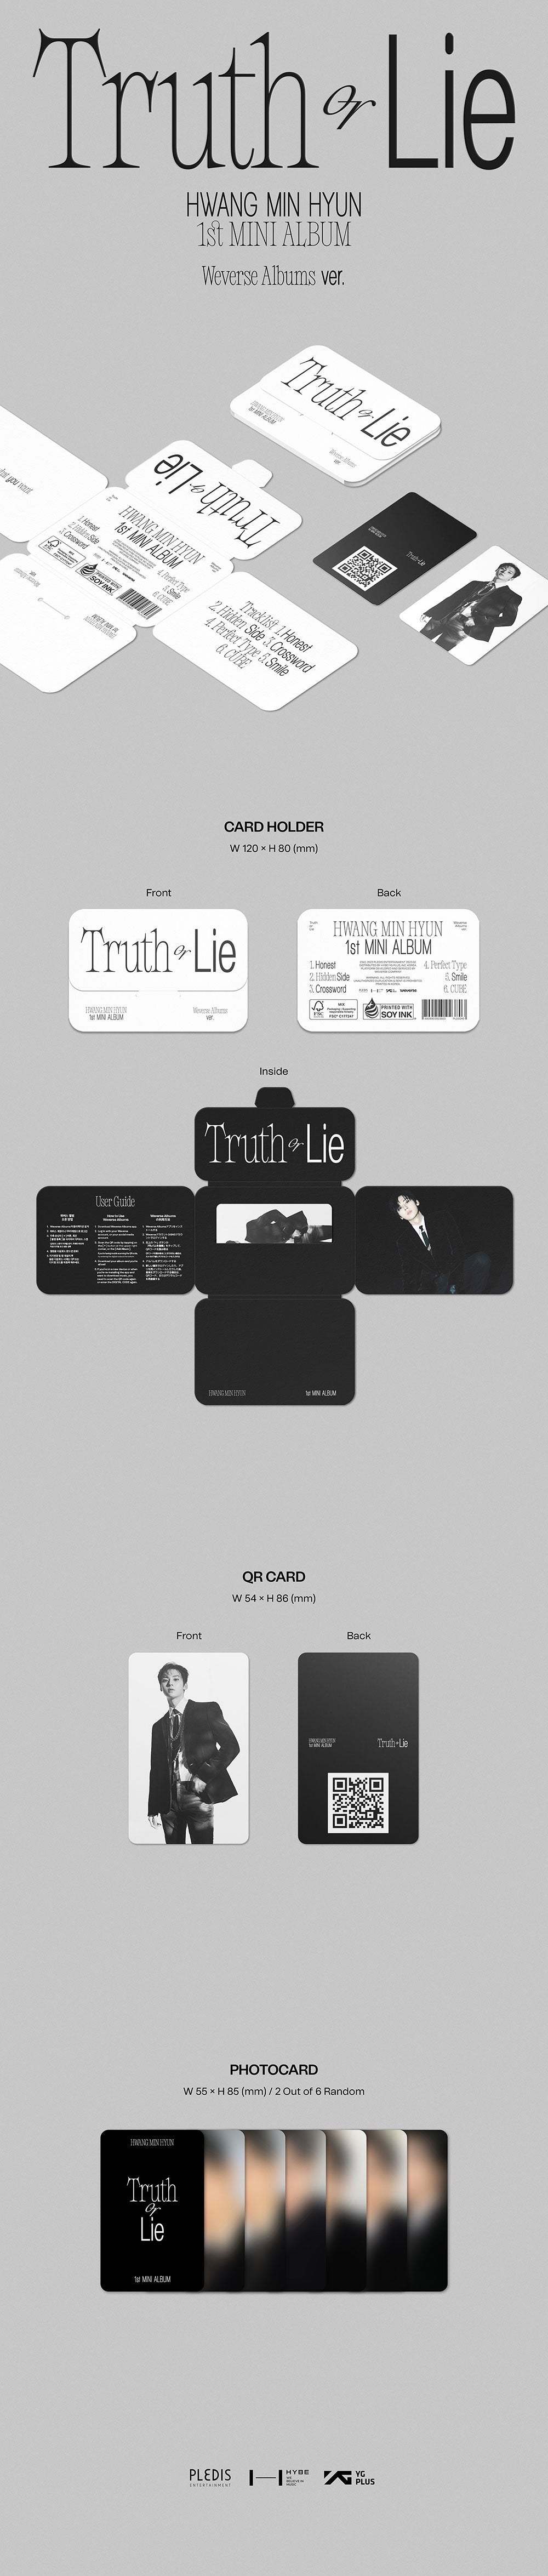 ファン・ミンヒョン - Truth or Lie (1st Mini Album) Weverse Album Ver.